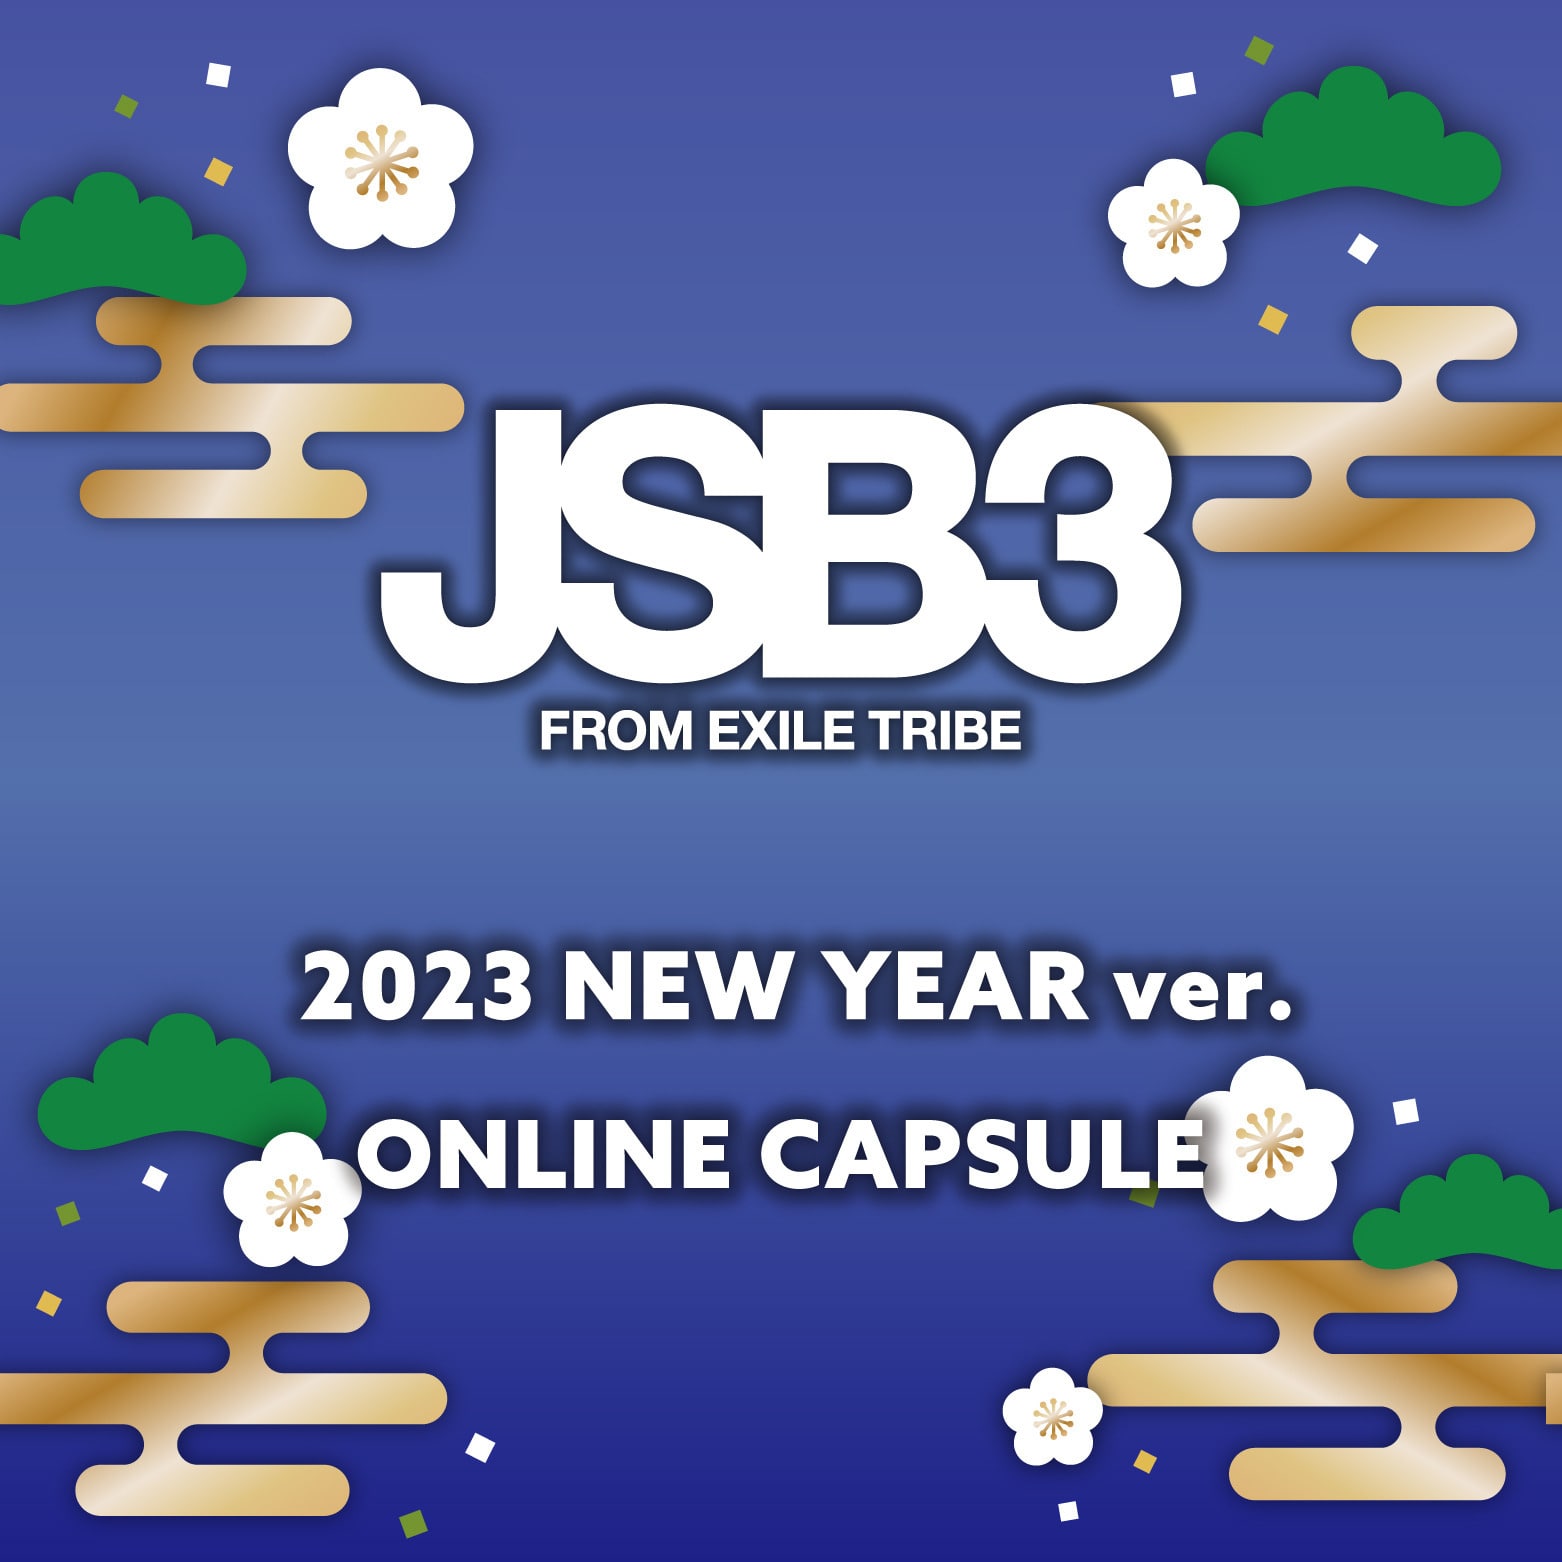 JSB3 2023 NEW YEAR